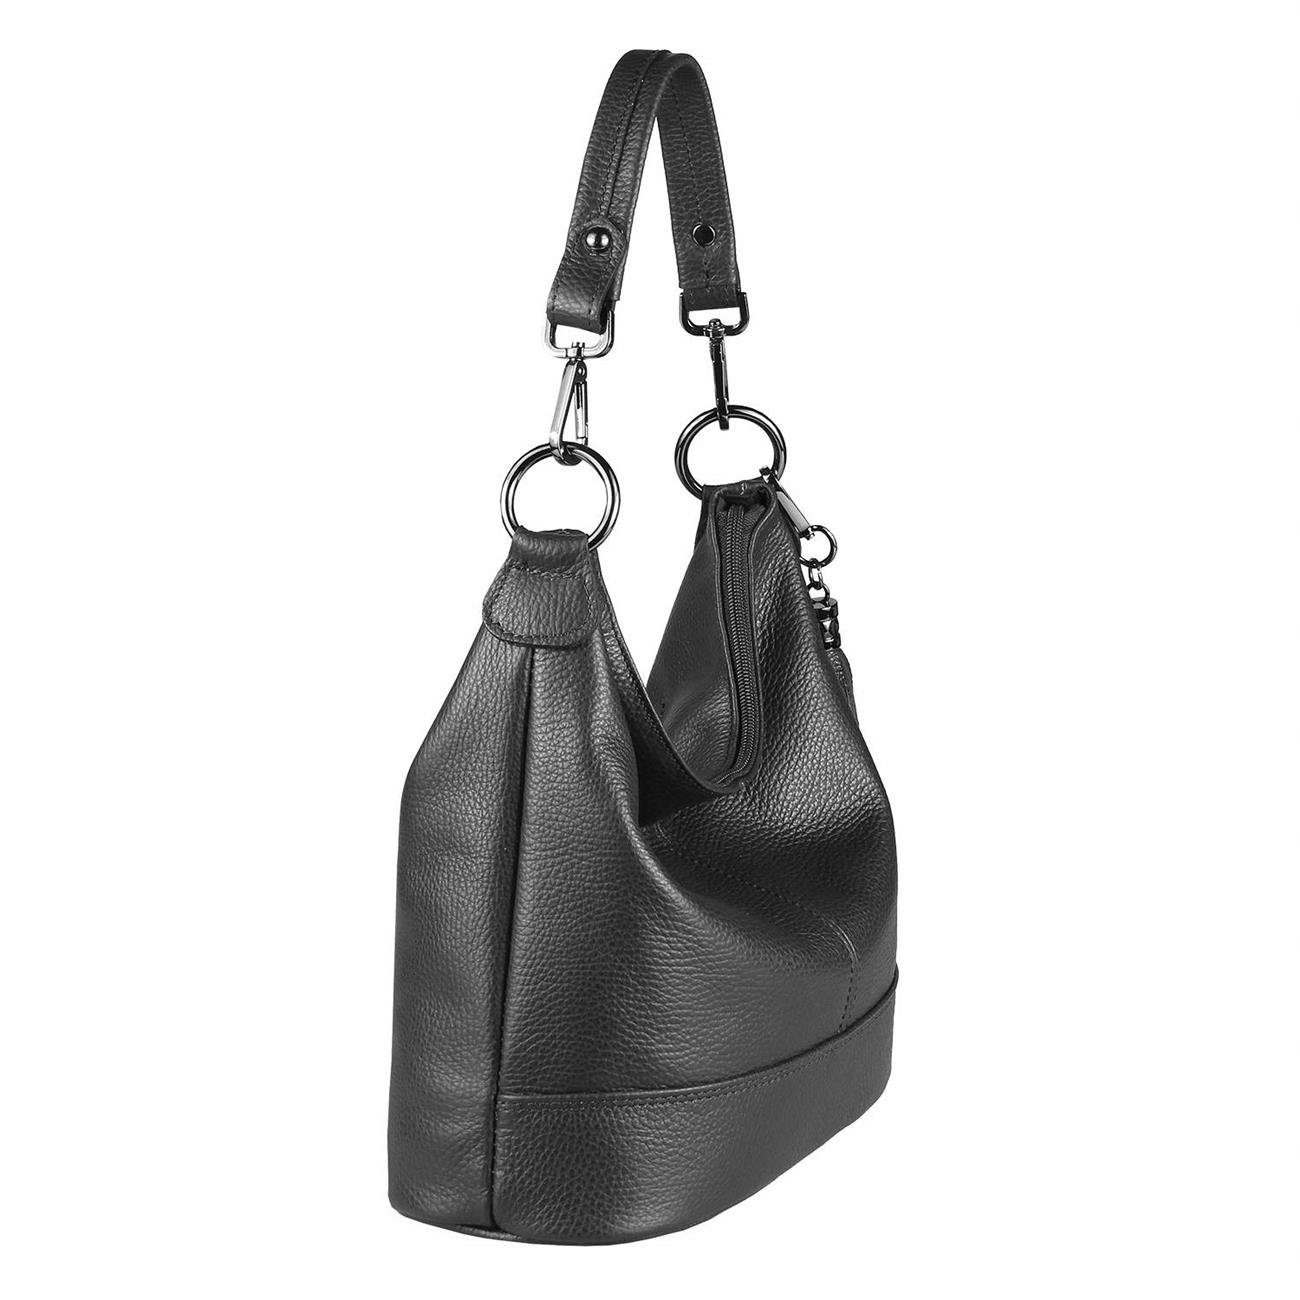 ITALYSHOP24 Schultertasche Schwarz CrossOver, Shopper, als Handtasche, Damen Made Italy Tasche tragbar Umhängetasche in Leder